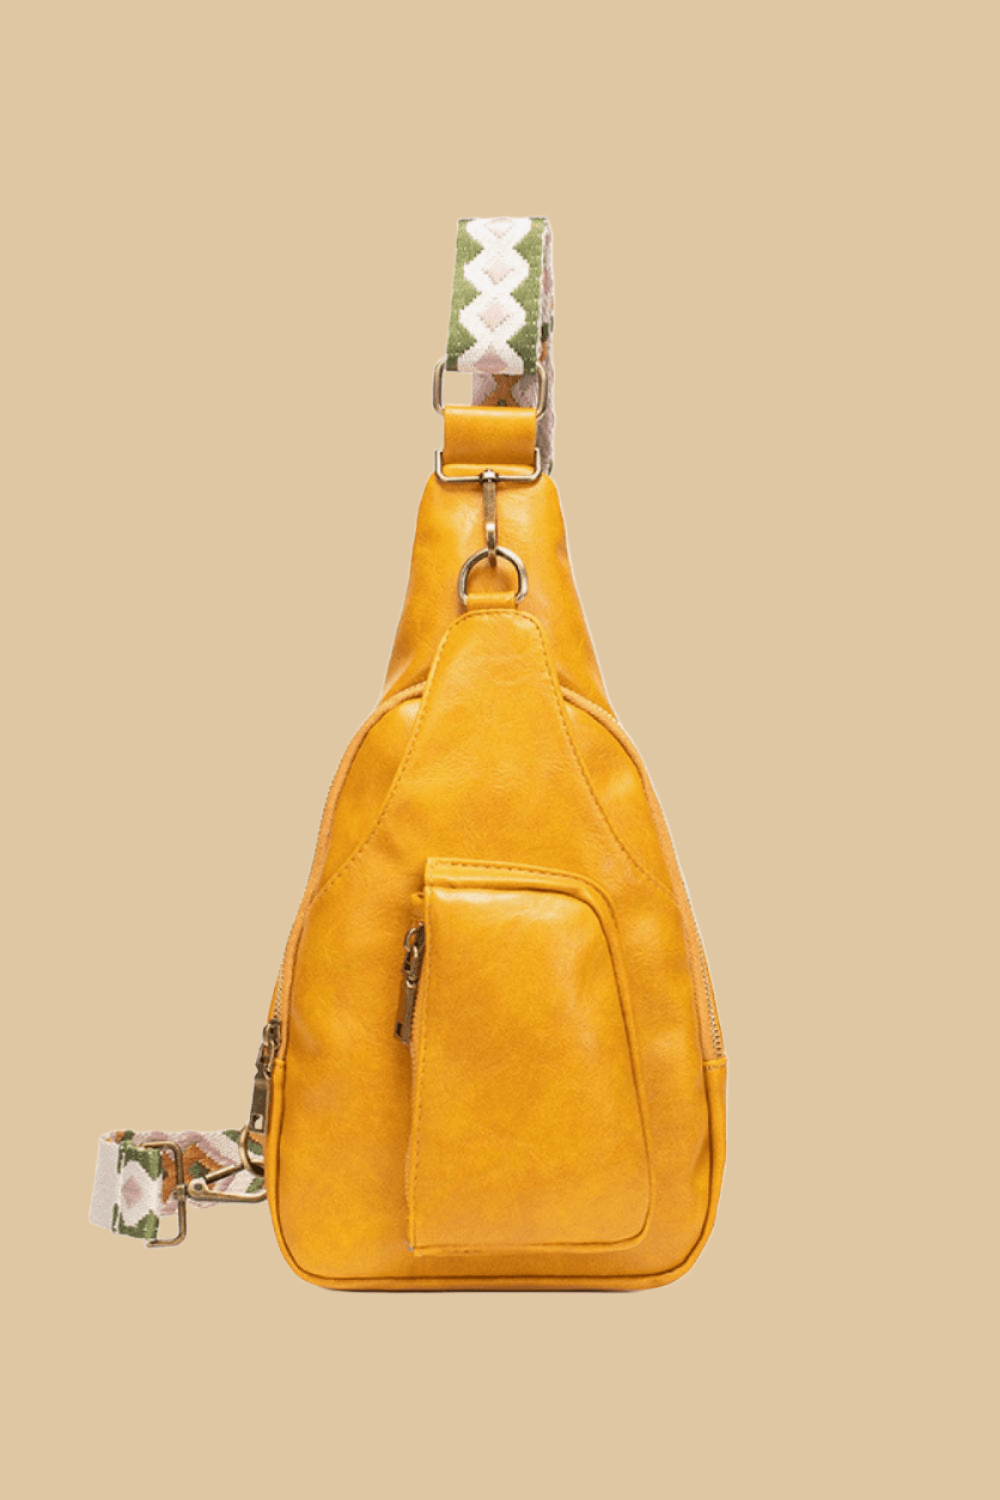 The802Gypsy Handbags GYPSY-All The Feels PU Leather Sling Bag